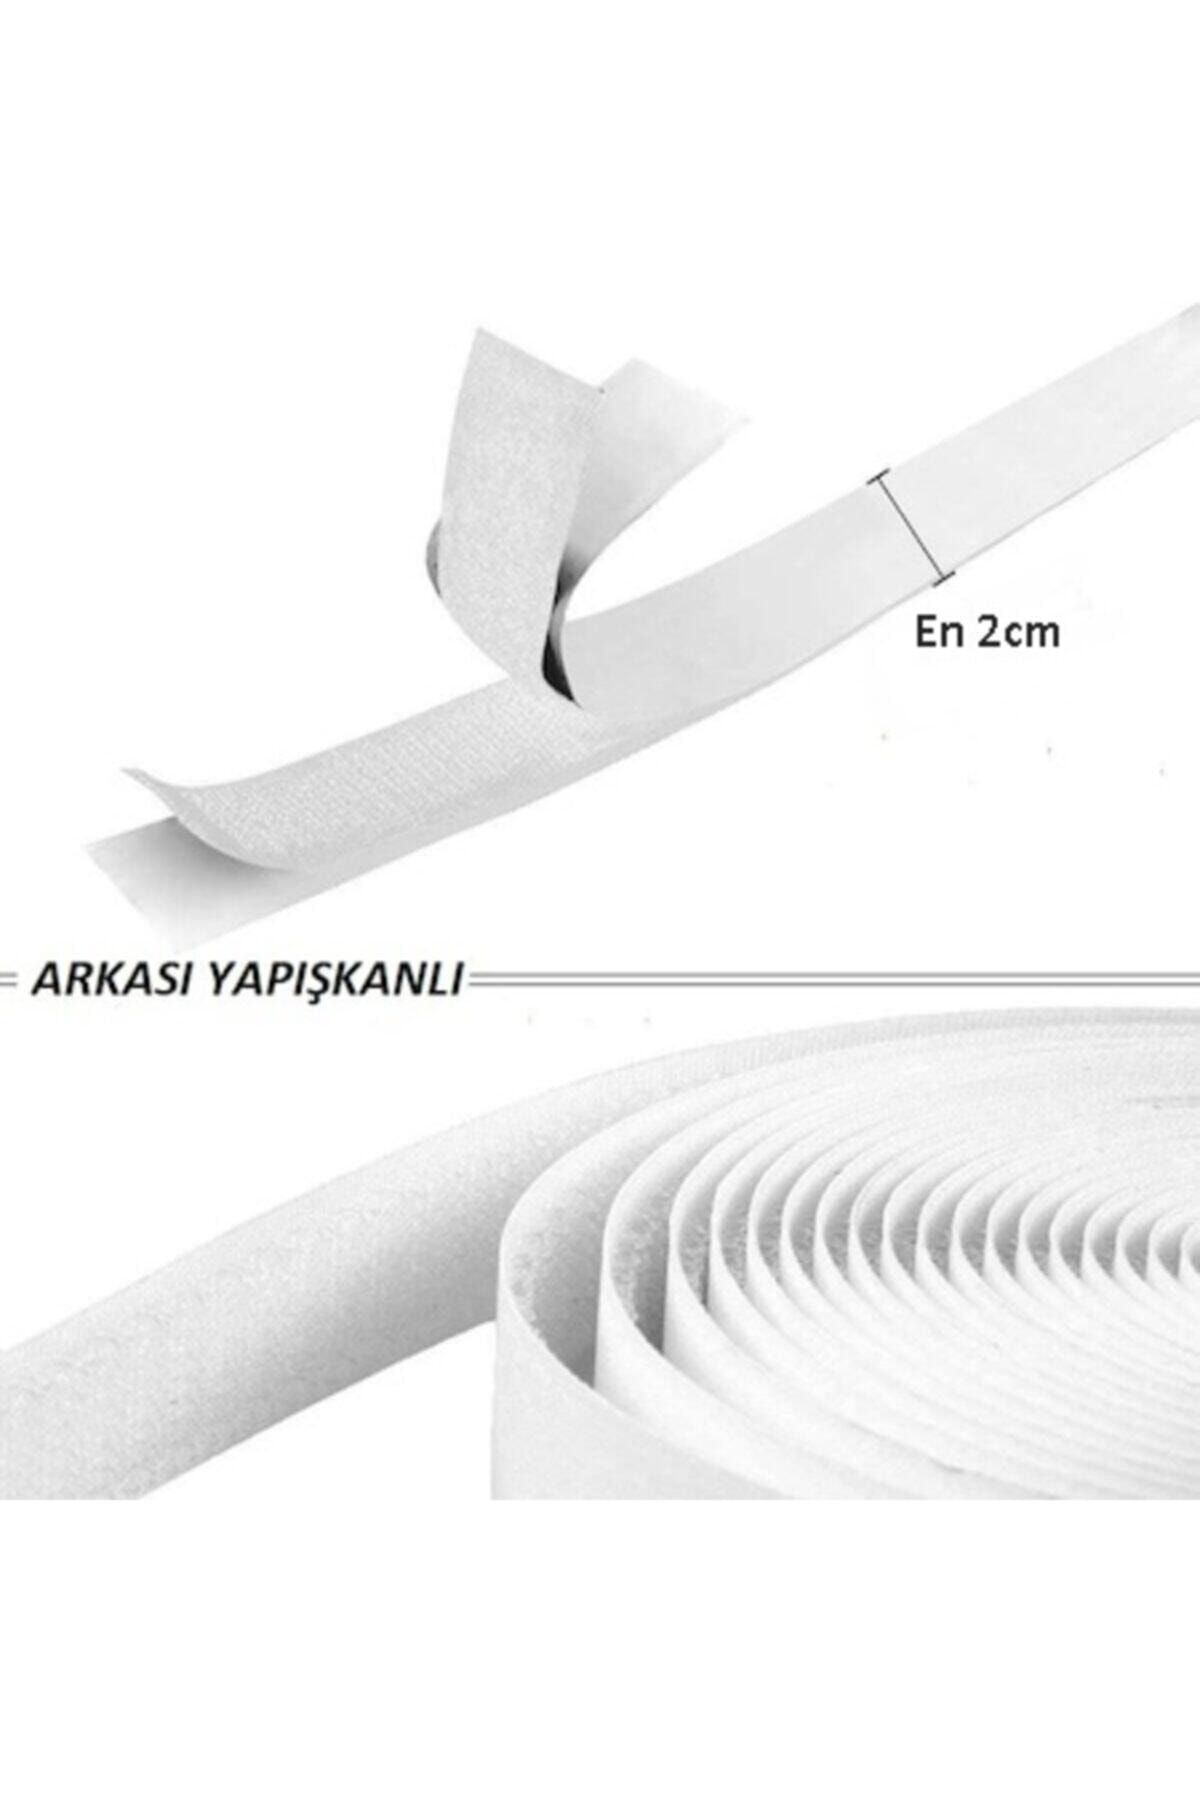 Kezban Tekstil 1 Metre Arkası Yapışkanlı Beyaz Cırt Cırtlı Bant Amerikan Fermuarı 2 Cm Genişlik